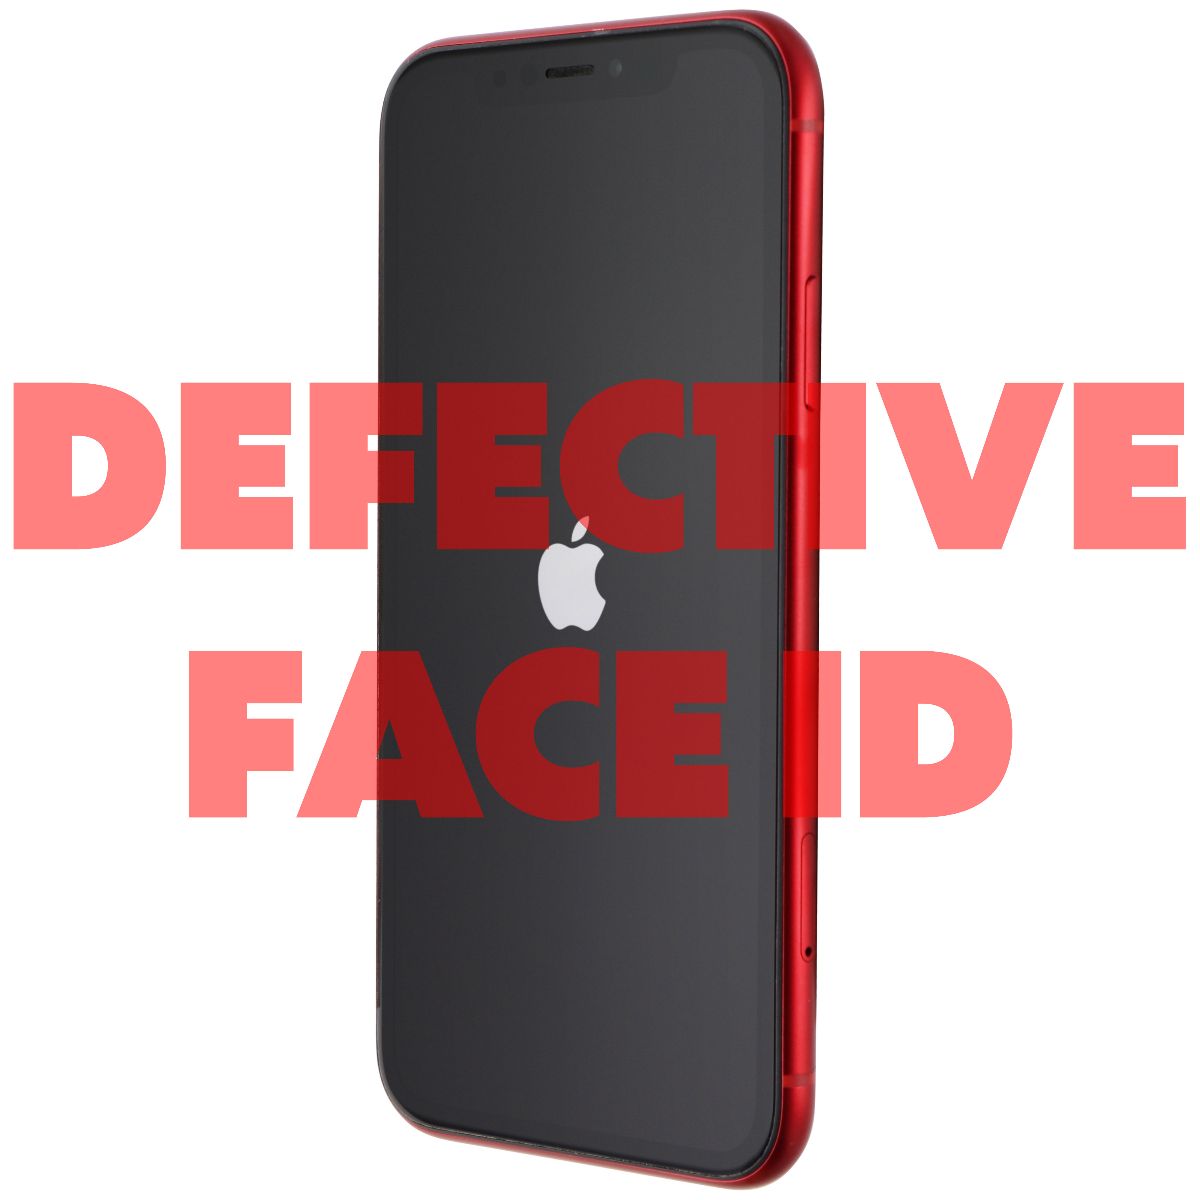 品質保証新品iPhone XR 64GB product RED スマートフォン本体